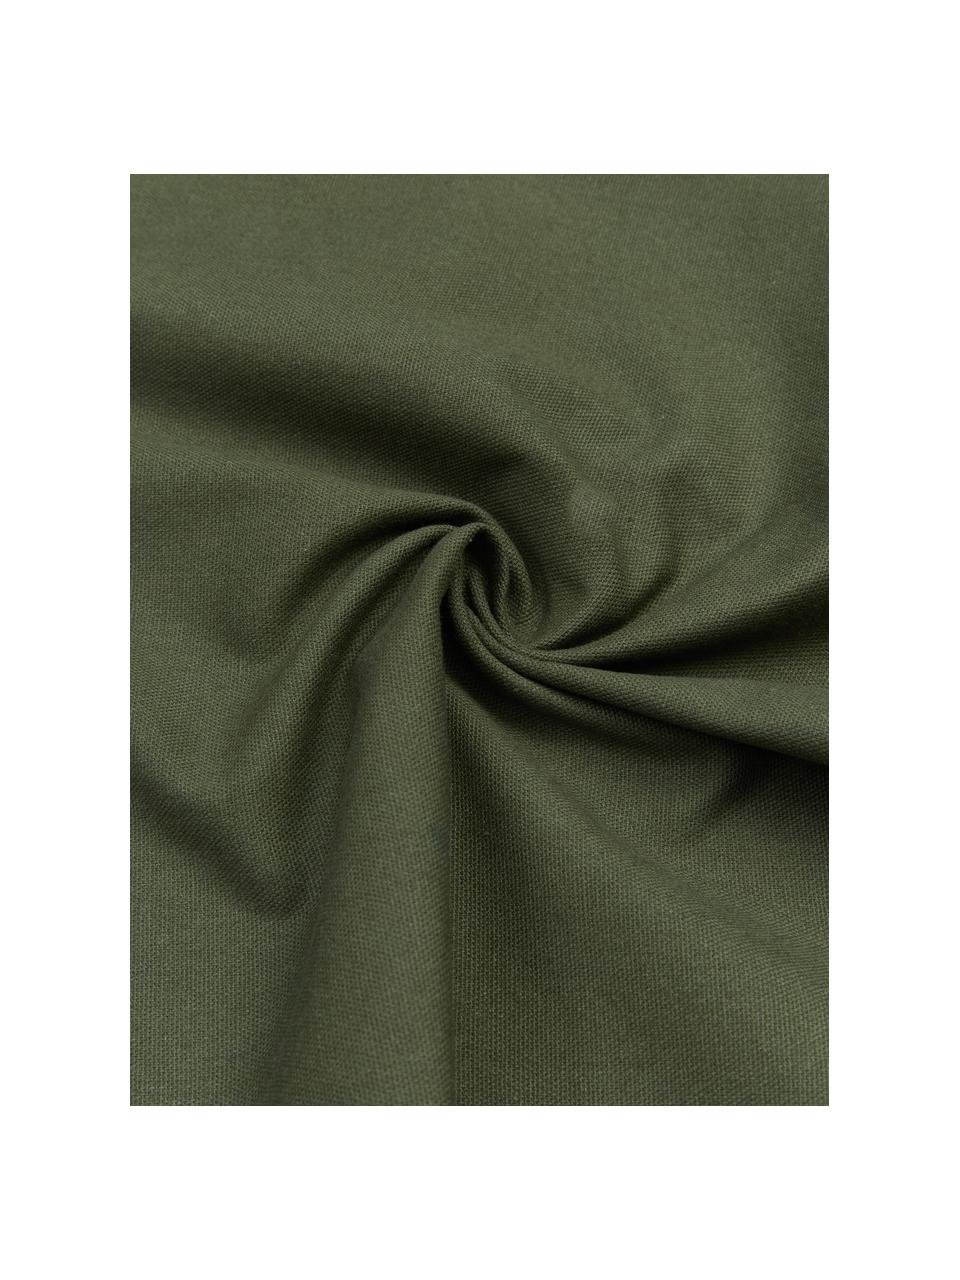 Poszewka na poduszkę z chwostami Shylo, 100% bawełna, Zielony, S 40 x D 40 cm